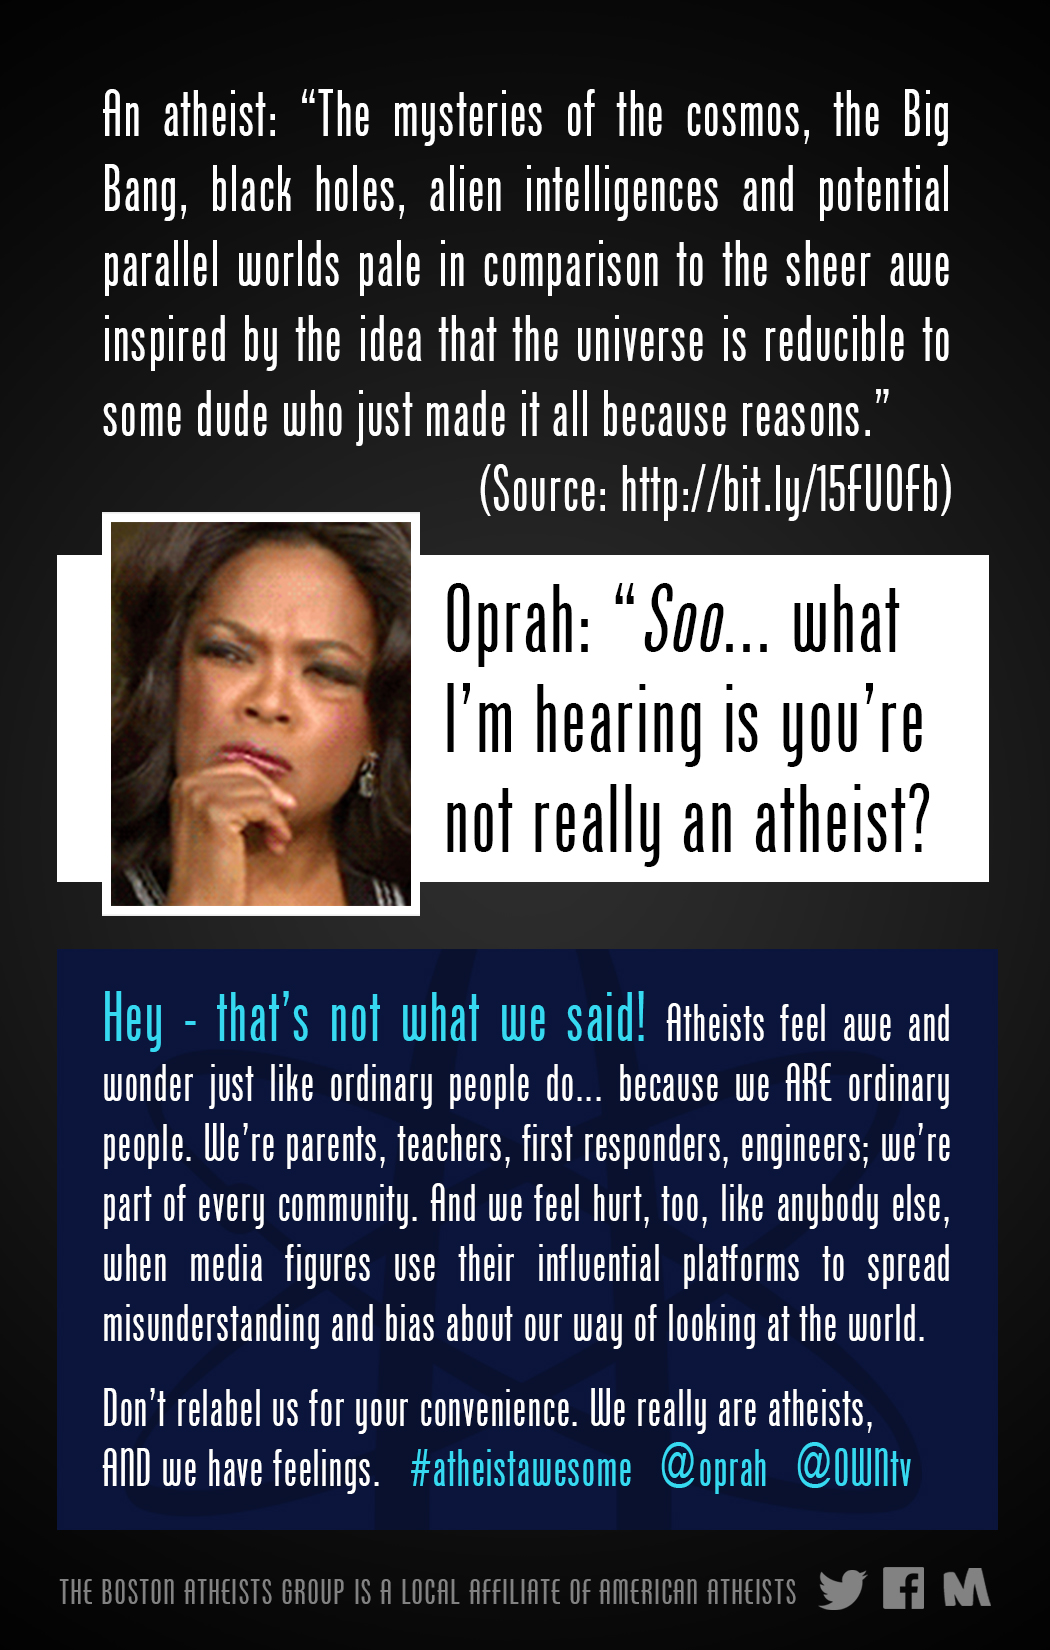 Boston Atheists Tell Oprah to Stop Relabeling Atheists